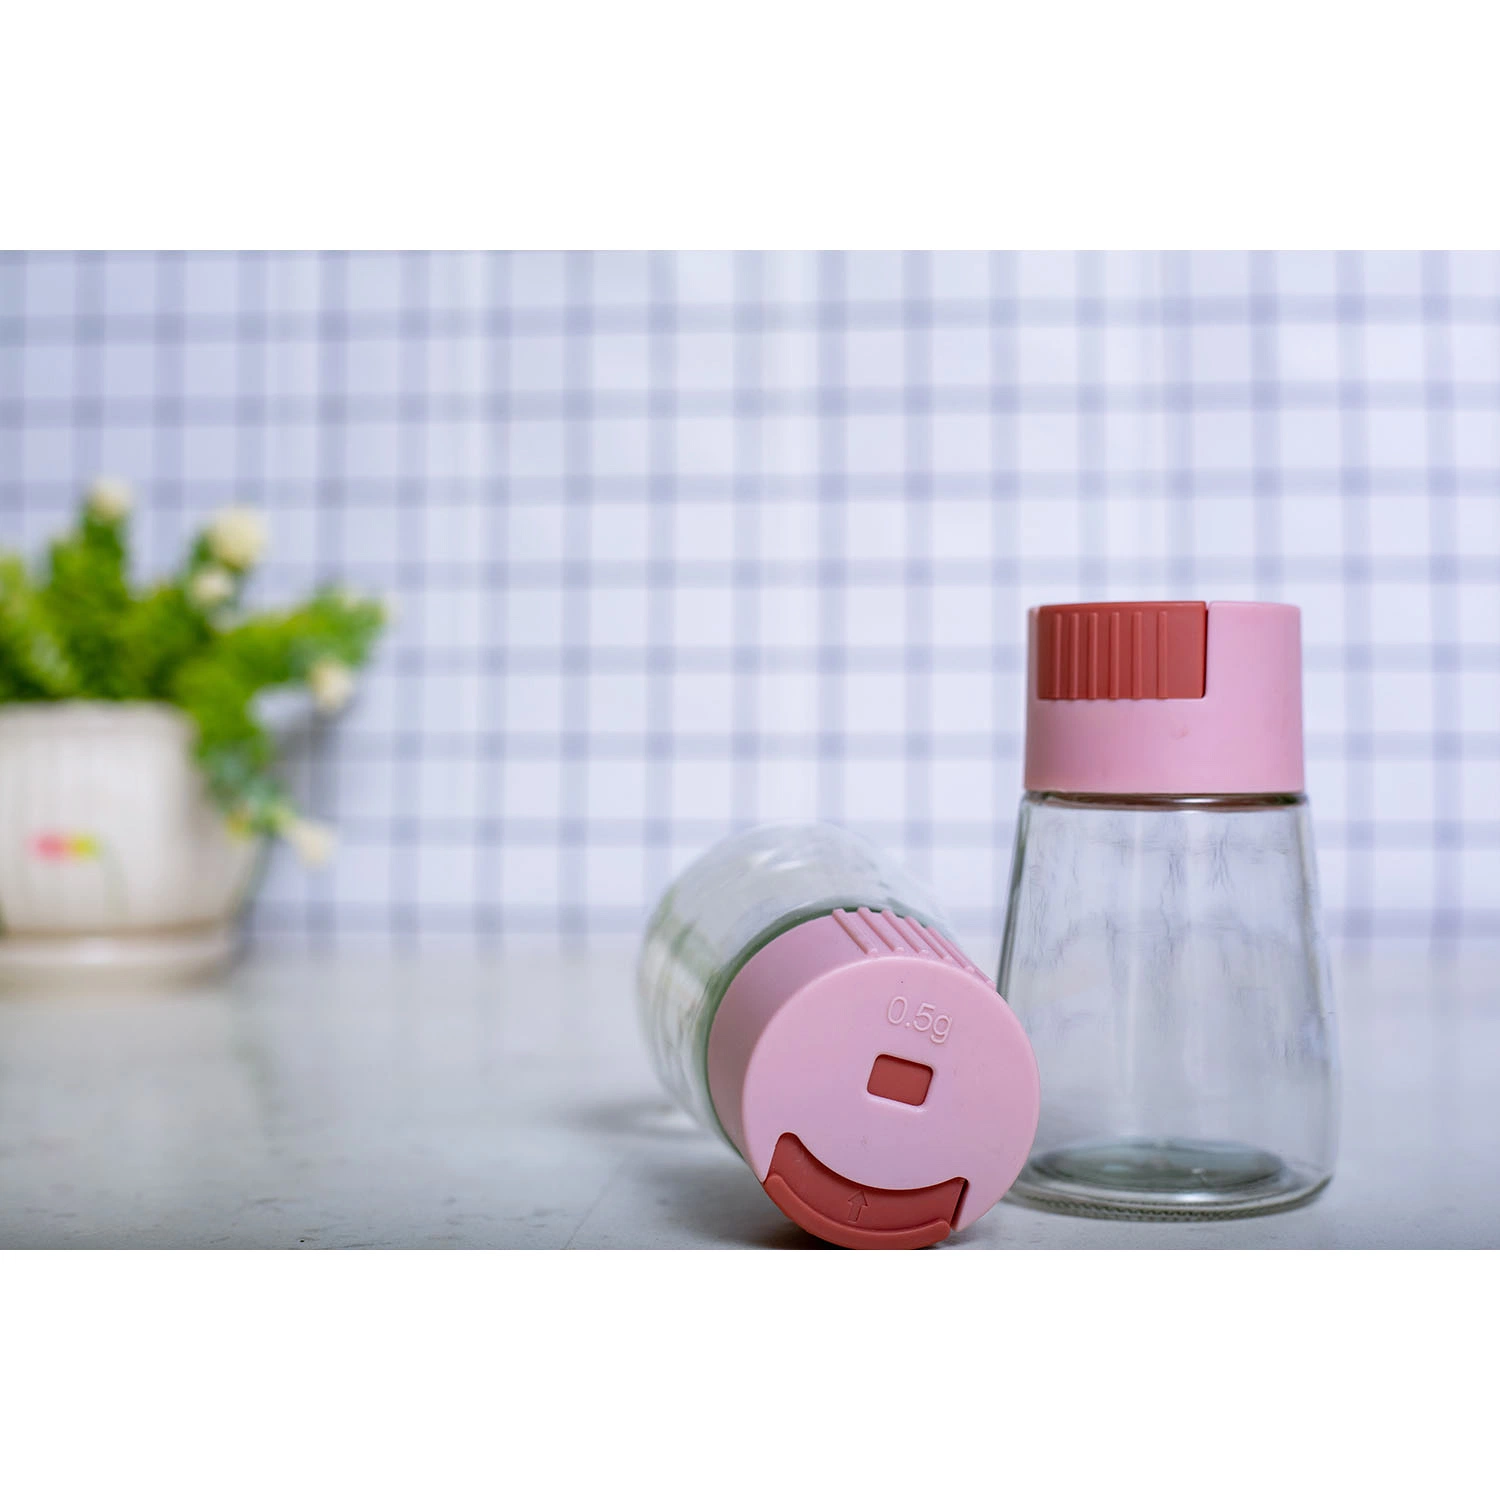 Sazonar pimienta de la caja de almacenamiento personalizado de contenedores de plástico PET transparente Salero botellas de condimentos especias de hierbas de cocina jarra